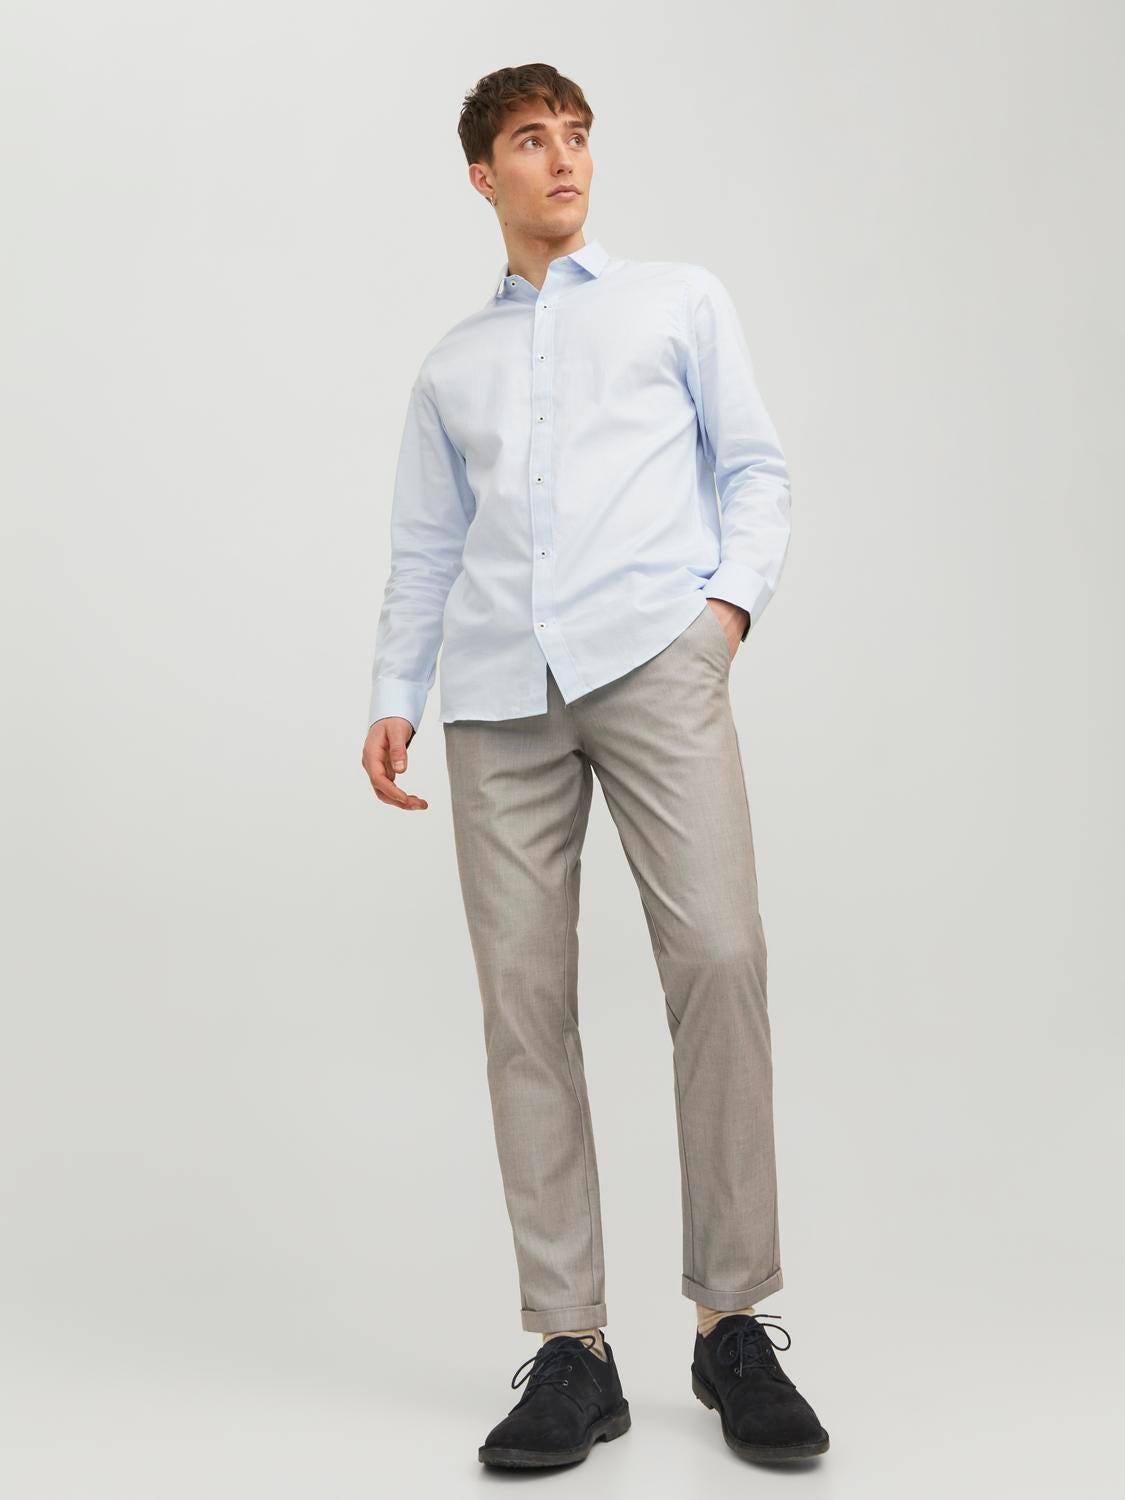 Fit Guide Men's Chinos Fits | Blue pants men, Mens chinos, Mens chino pants